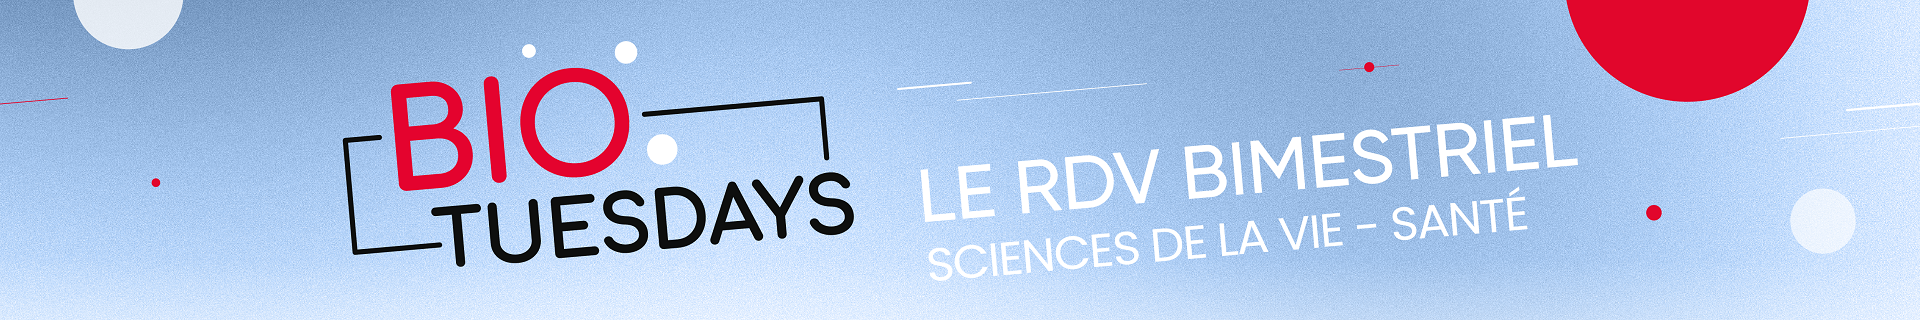 Biotuesdays : Le RDV bimestriel des sciences de la vie